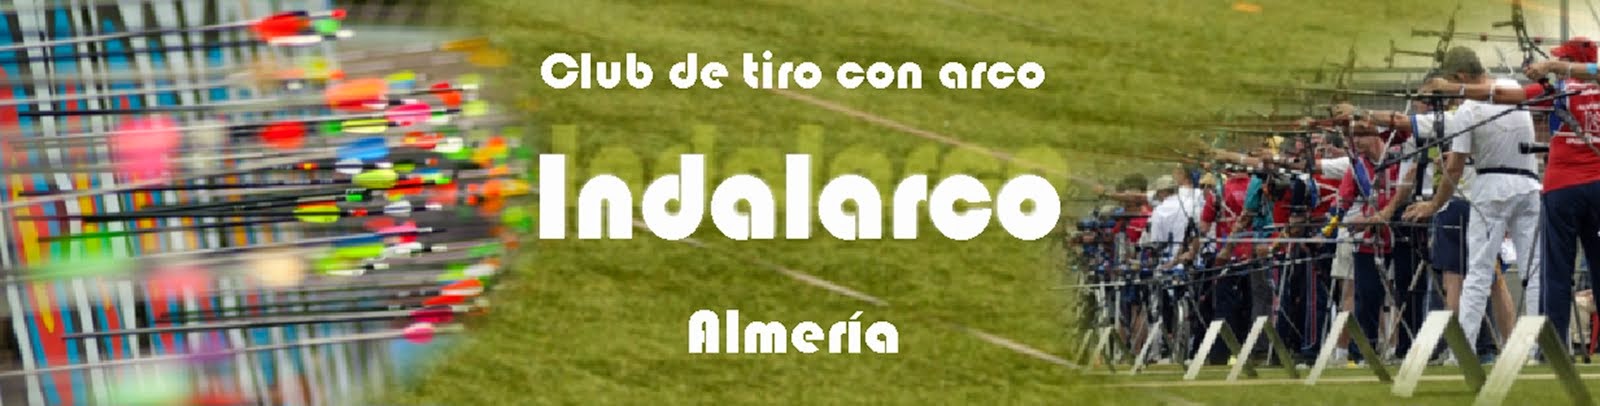 Club Indalarco Almería